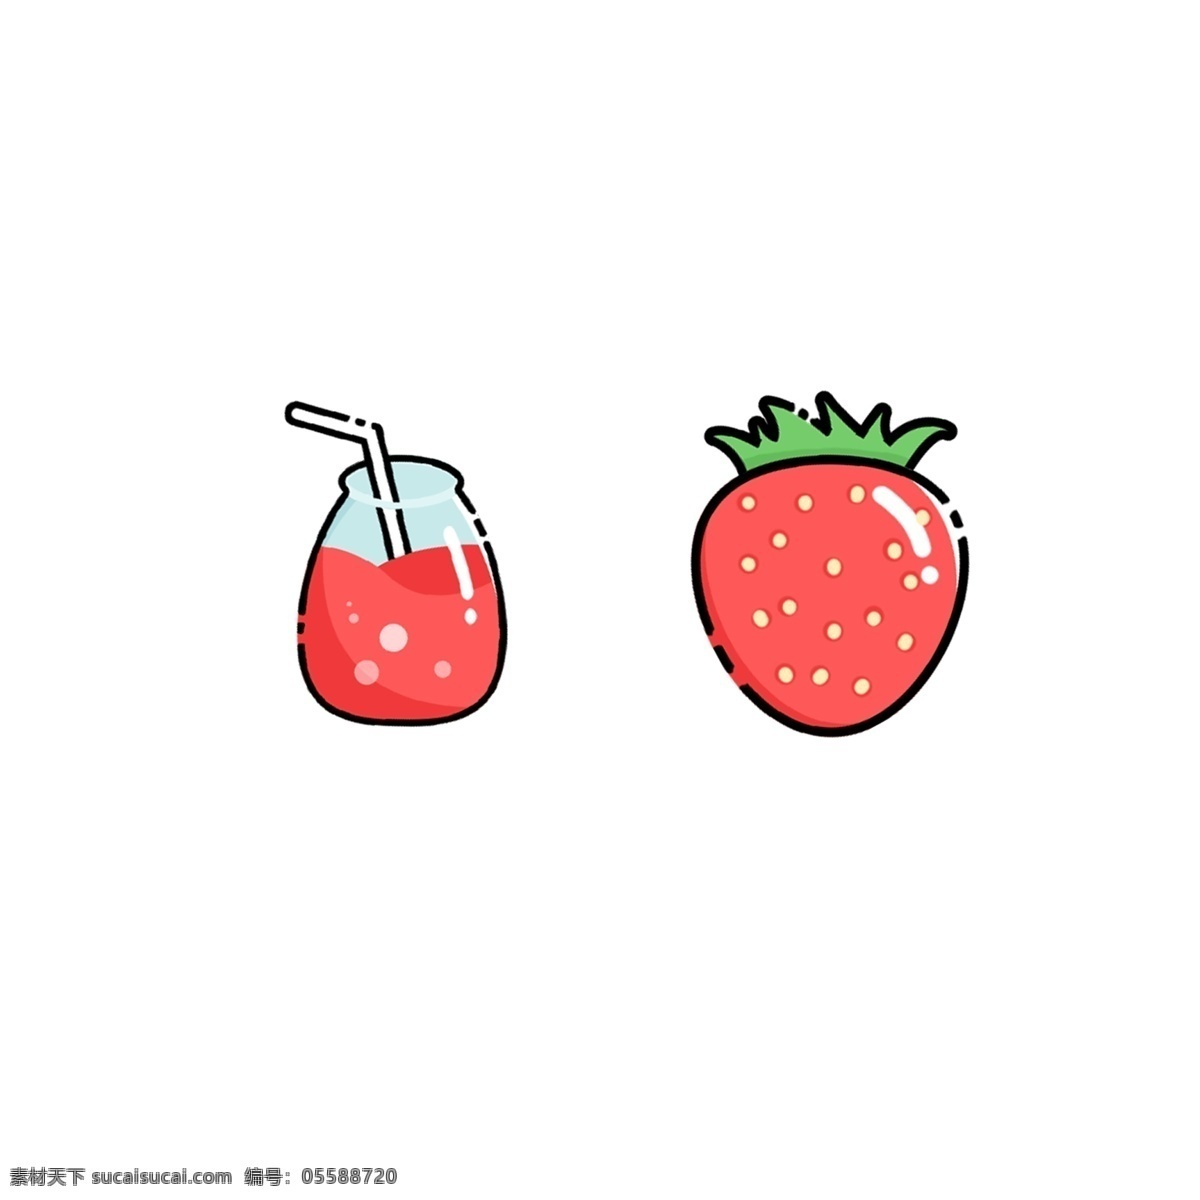 红色 手绘 卡通 草莓 卡通草莓 手绘草莓 水果 粉色 绿色 果汁 奶油草莓